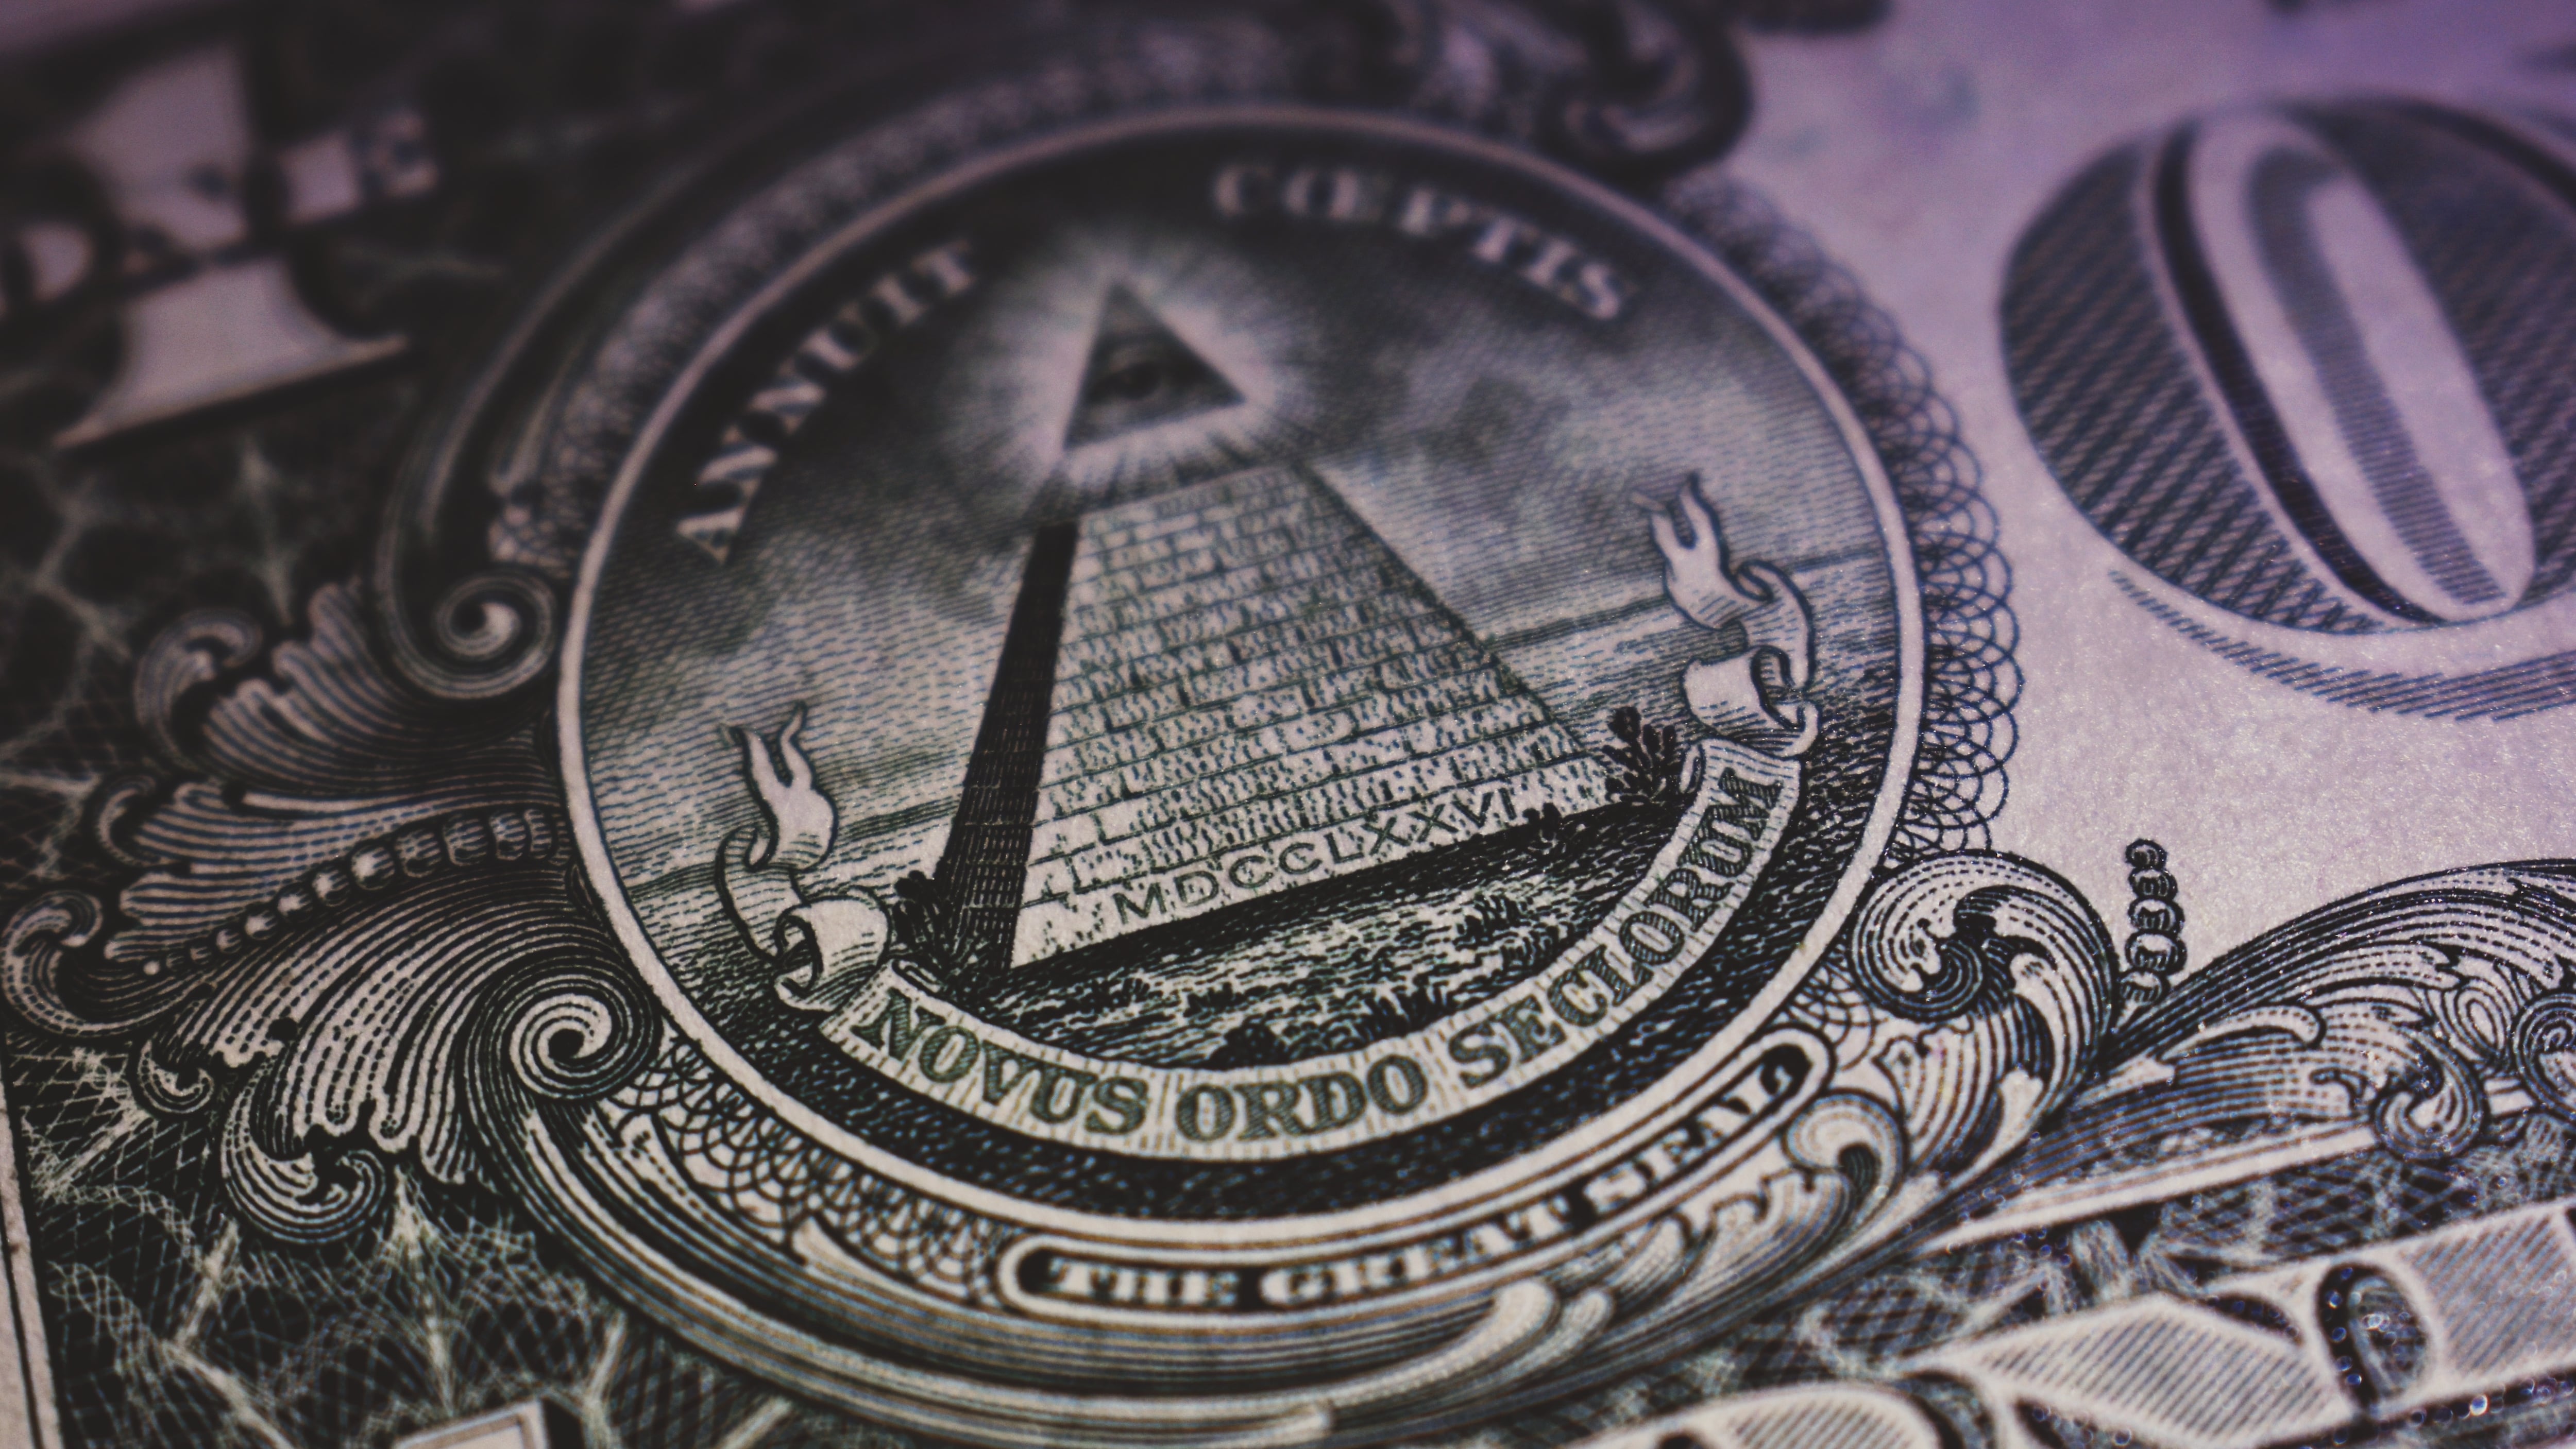 ¿Los billetes de un dólar ocultan una secta secreta? Se habla de los Iluminati